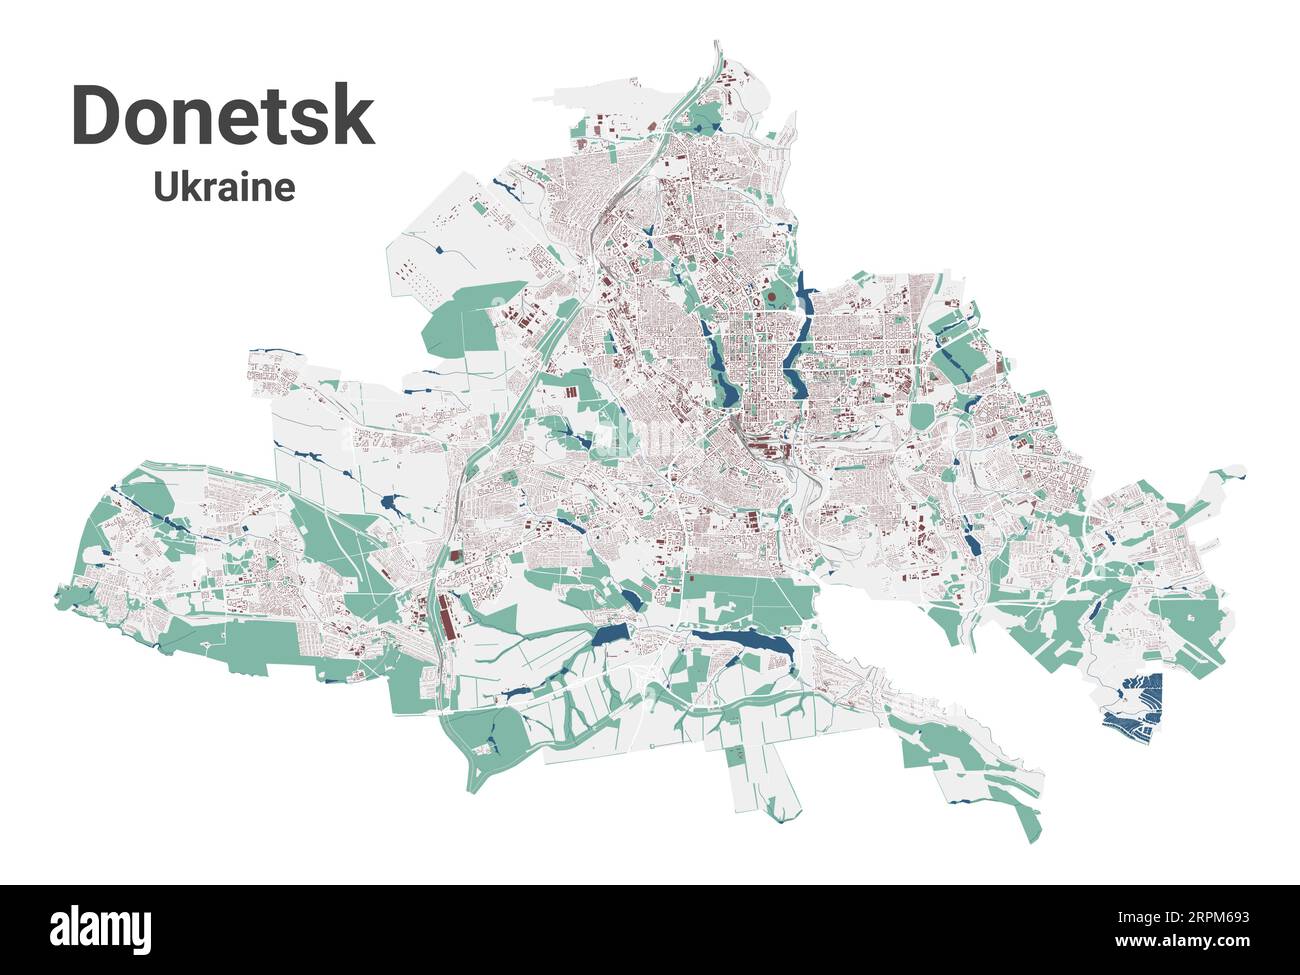 Carte de Donetsk, ville en Ukraine. Carte de la zone administrative municipale avec les bâtiments, les rivières et les routes, les parcs et les voies ferrées. Illustration vectorielle. Illustration de Vecteur